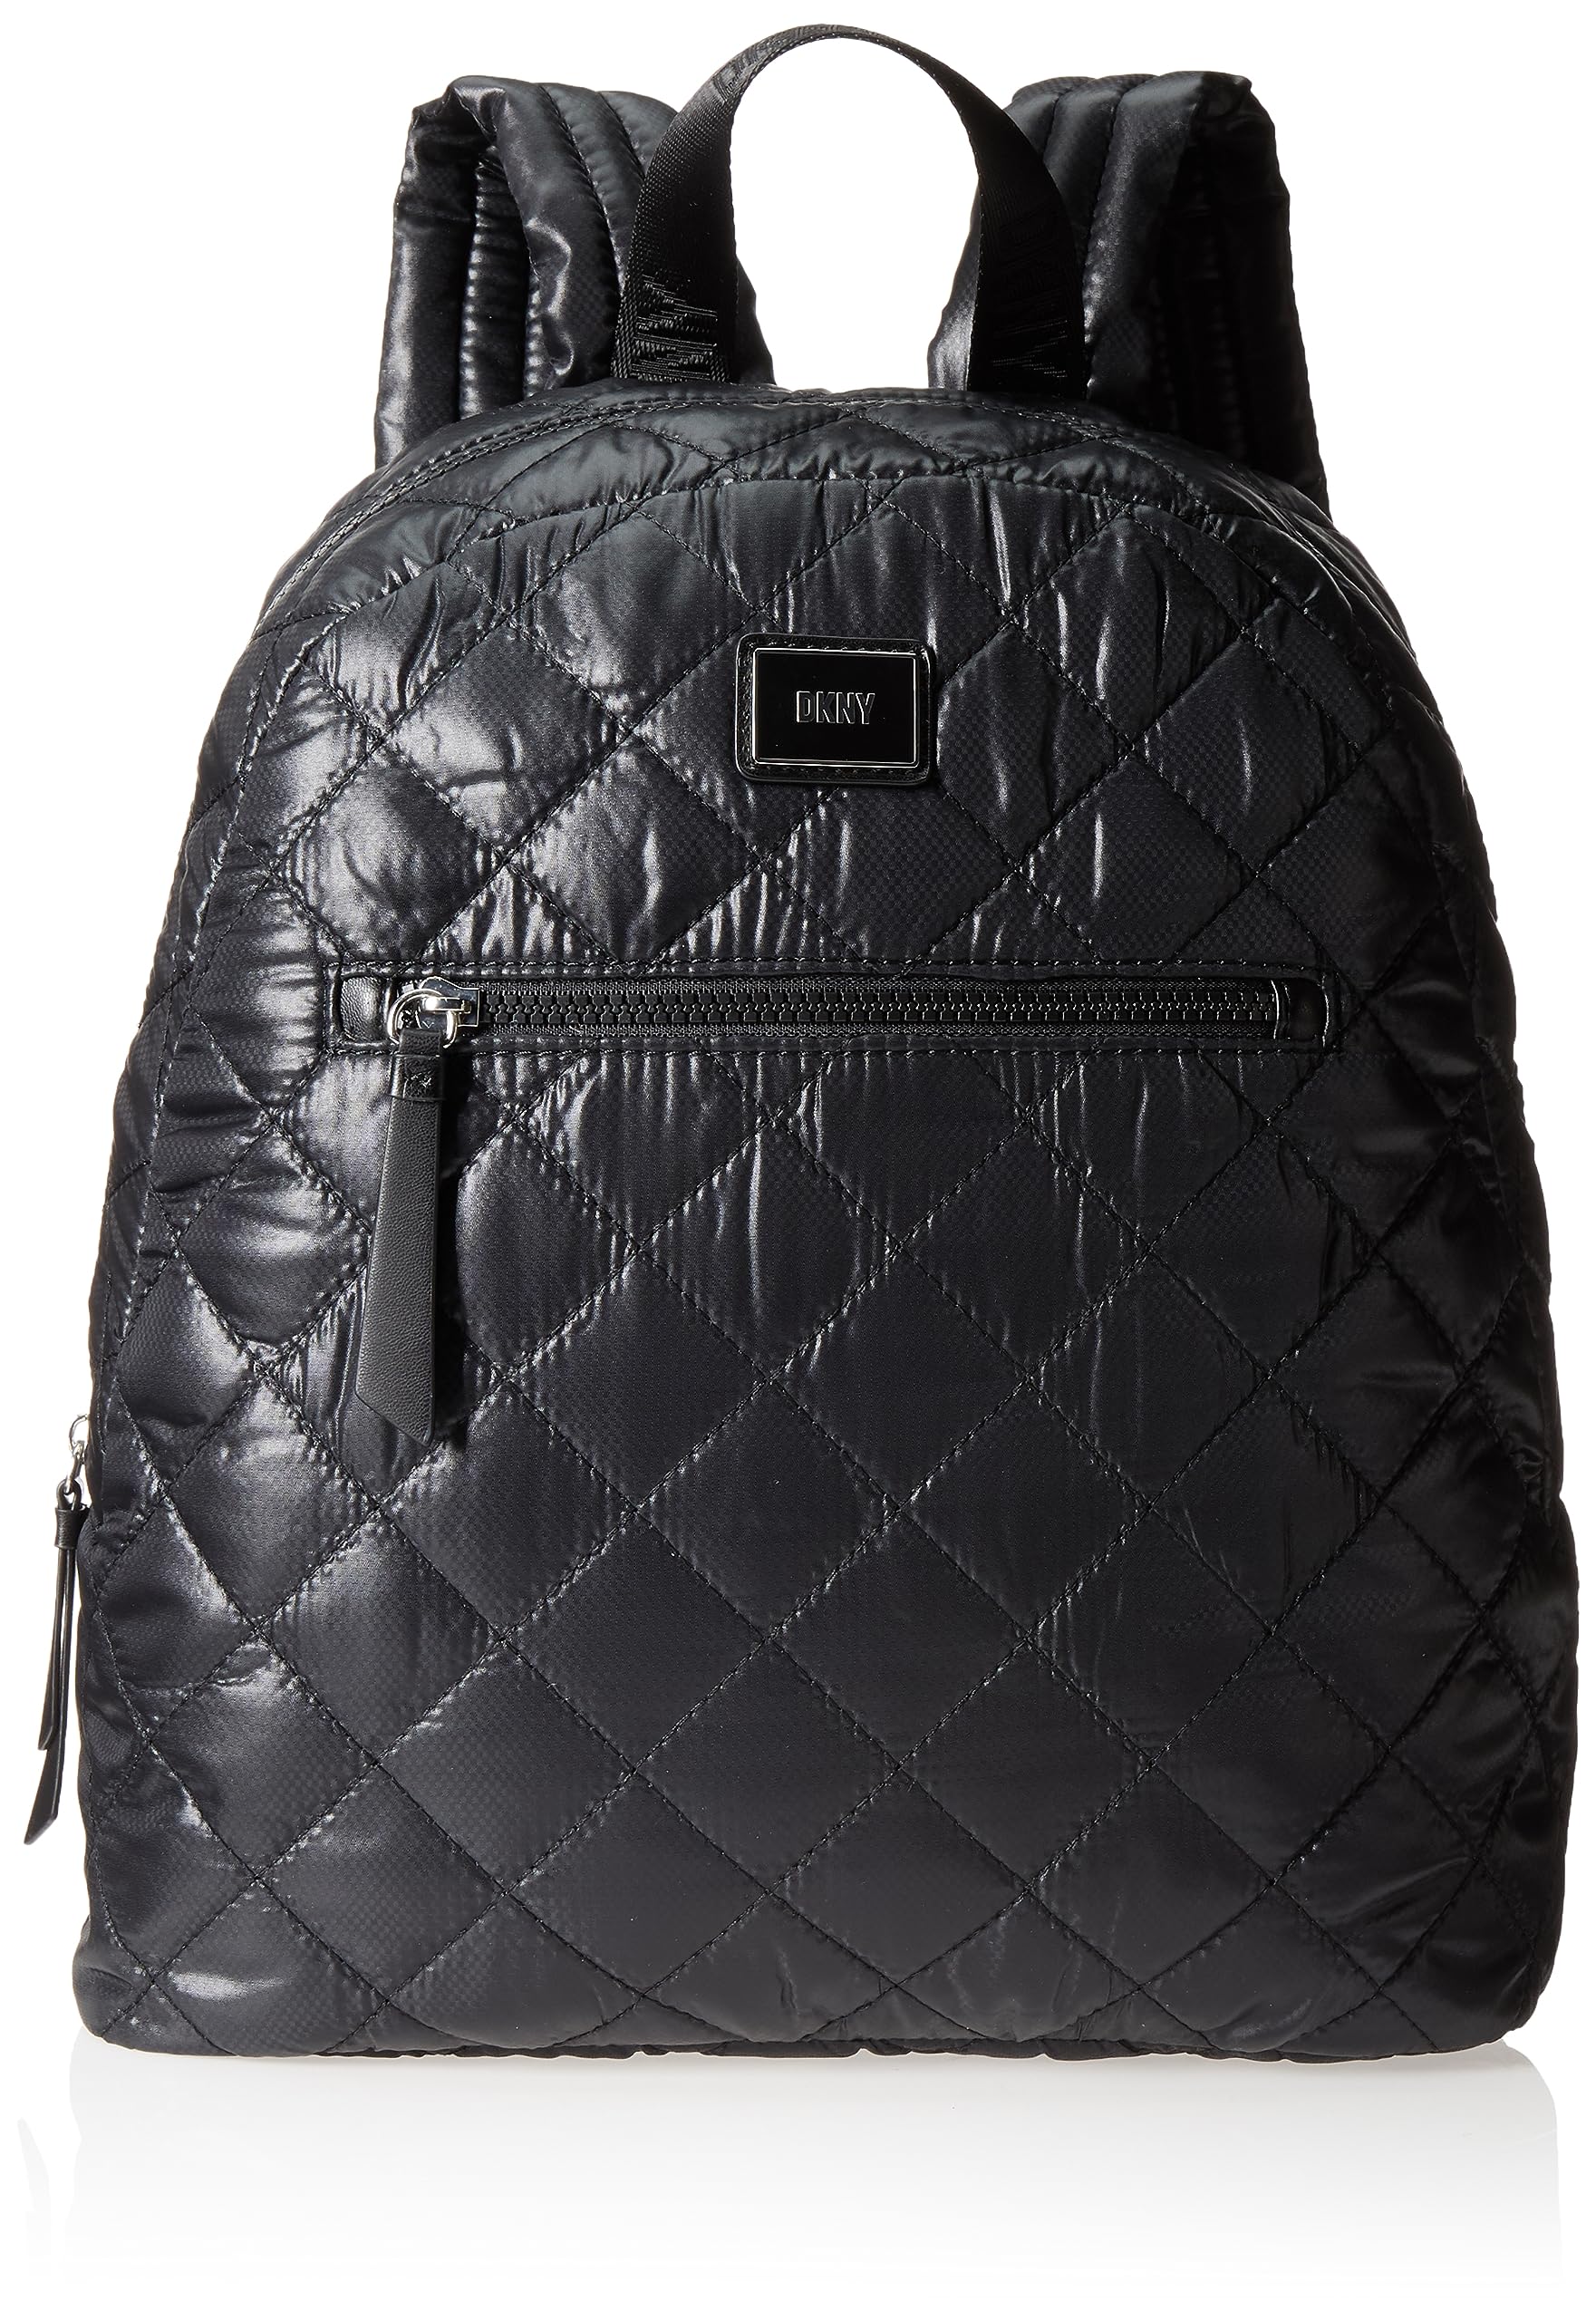 DKNY LYLA Backpack, BLK/Black